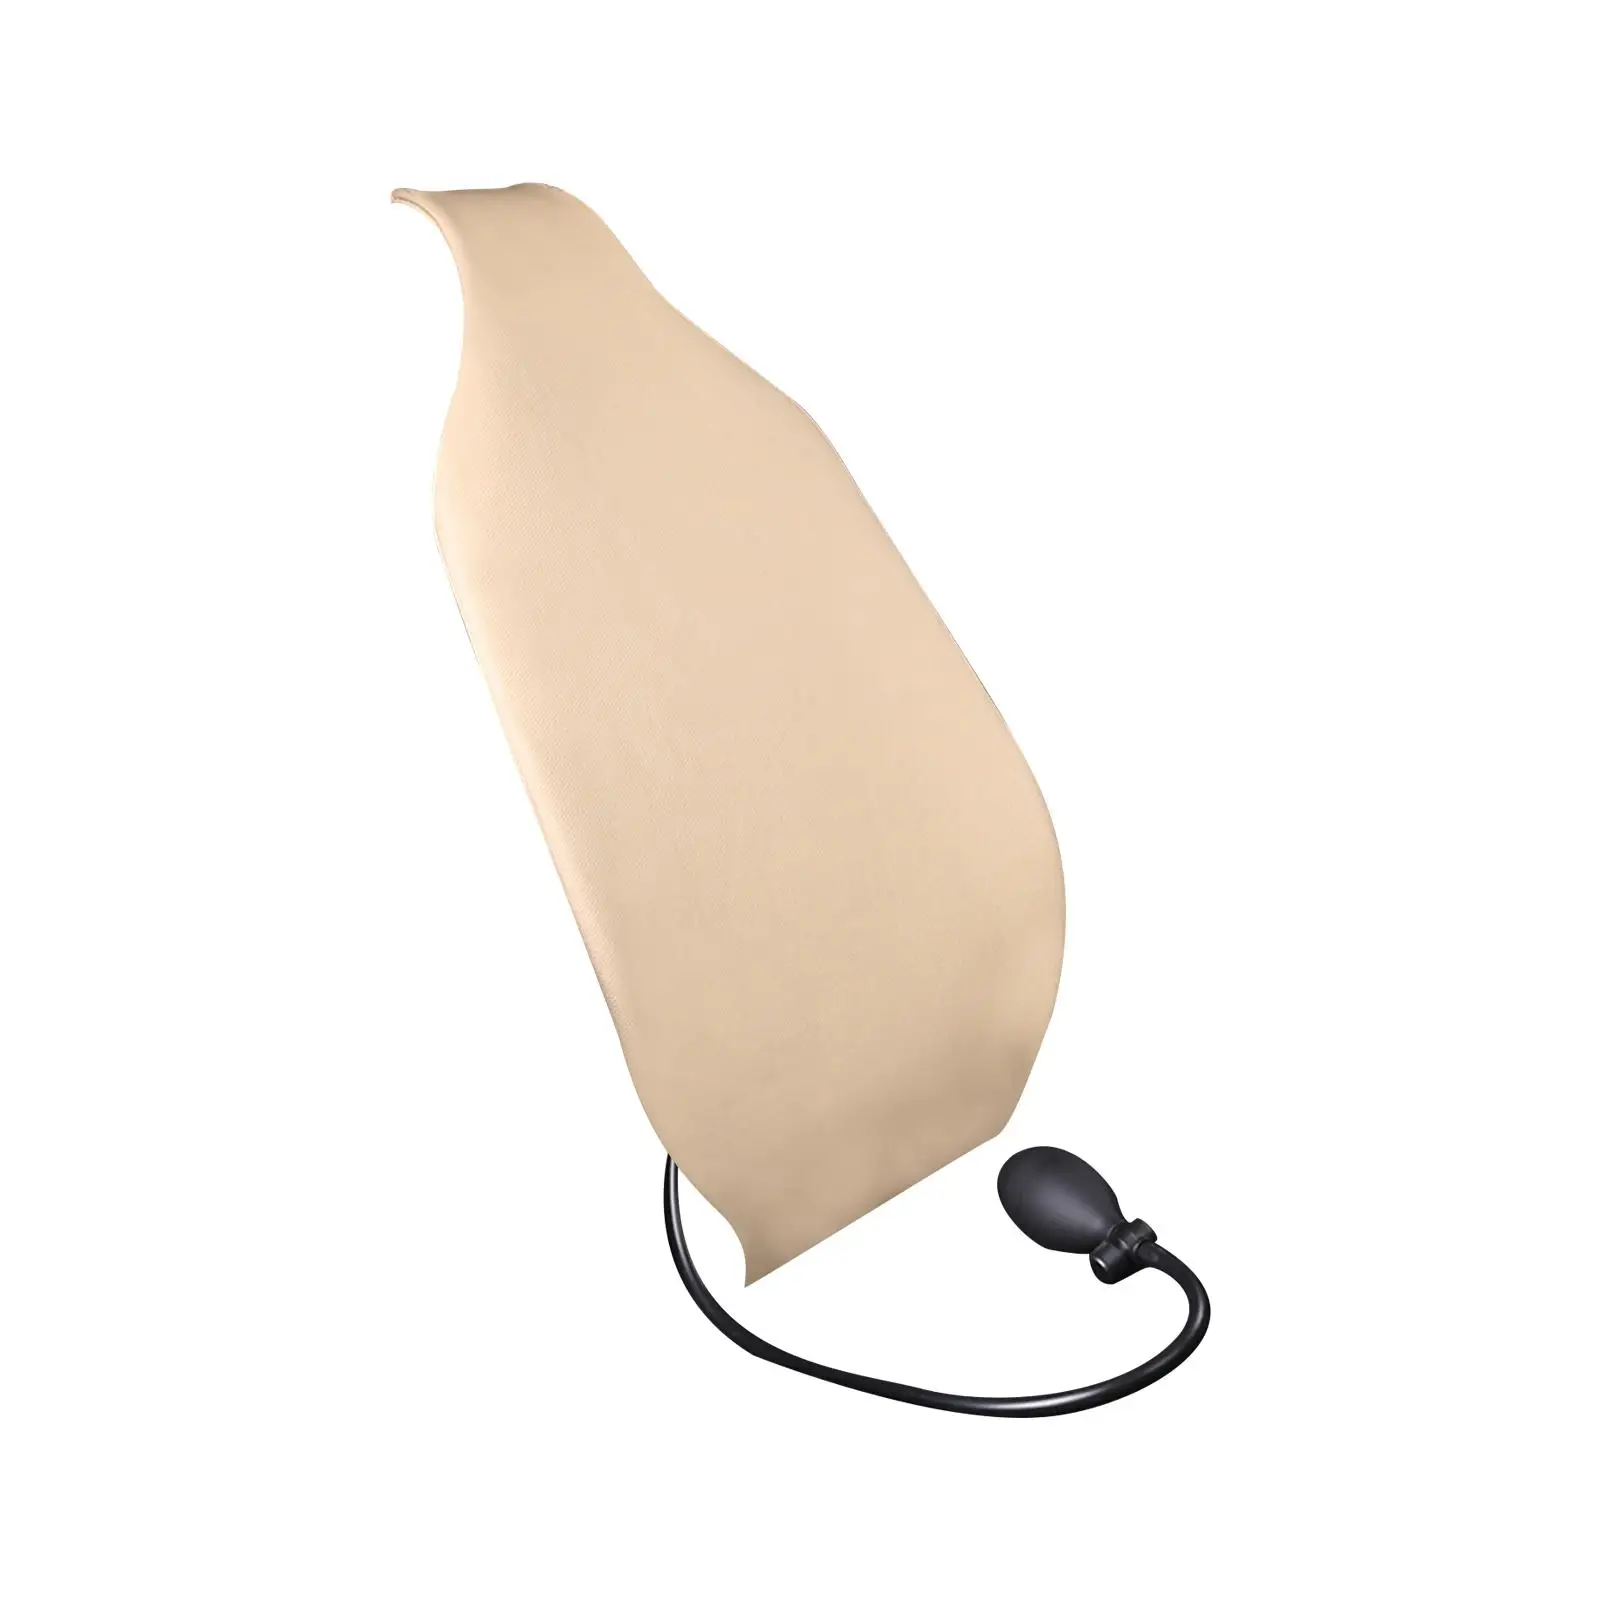 Car Lumbar Support Cushion Durable Comfortable Anti Slip Air Motion Backrest